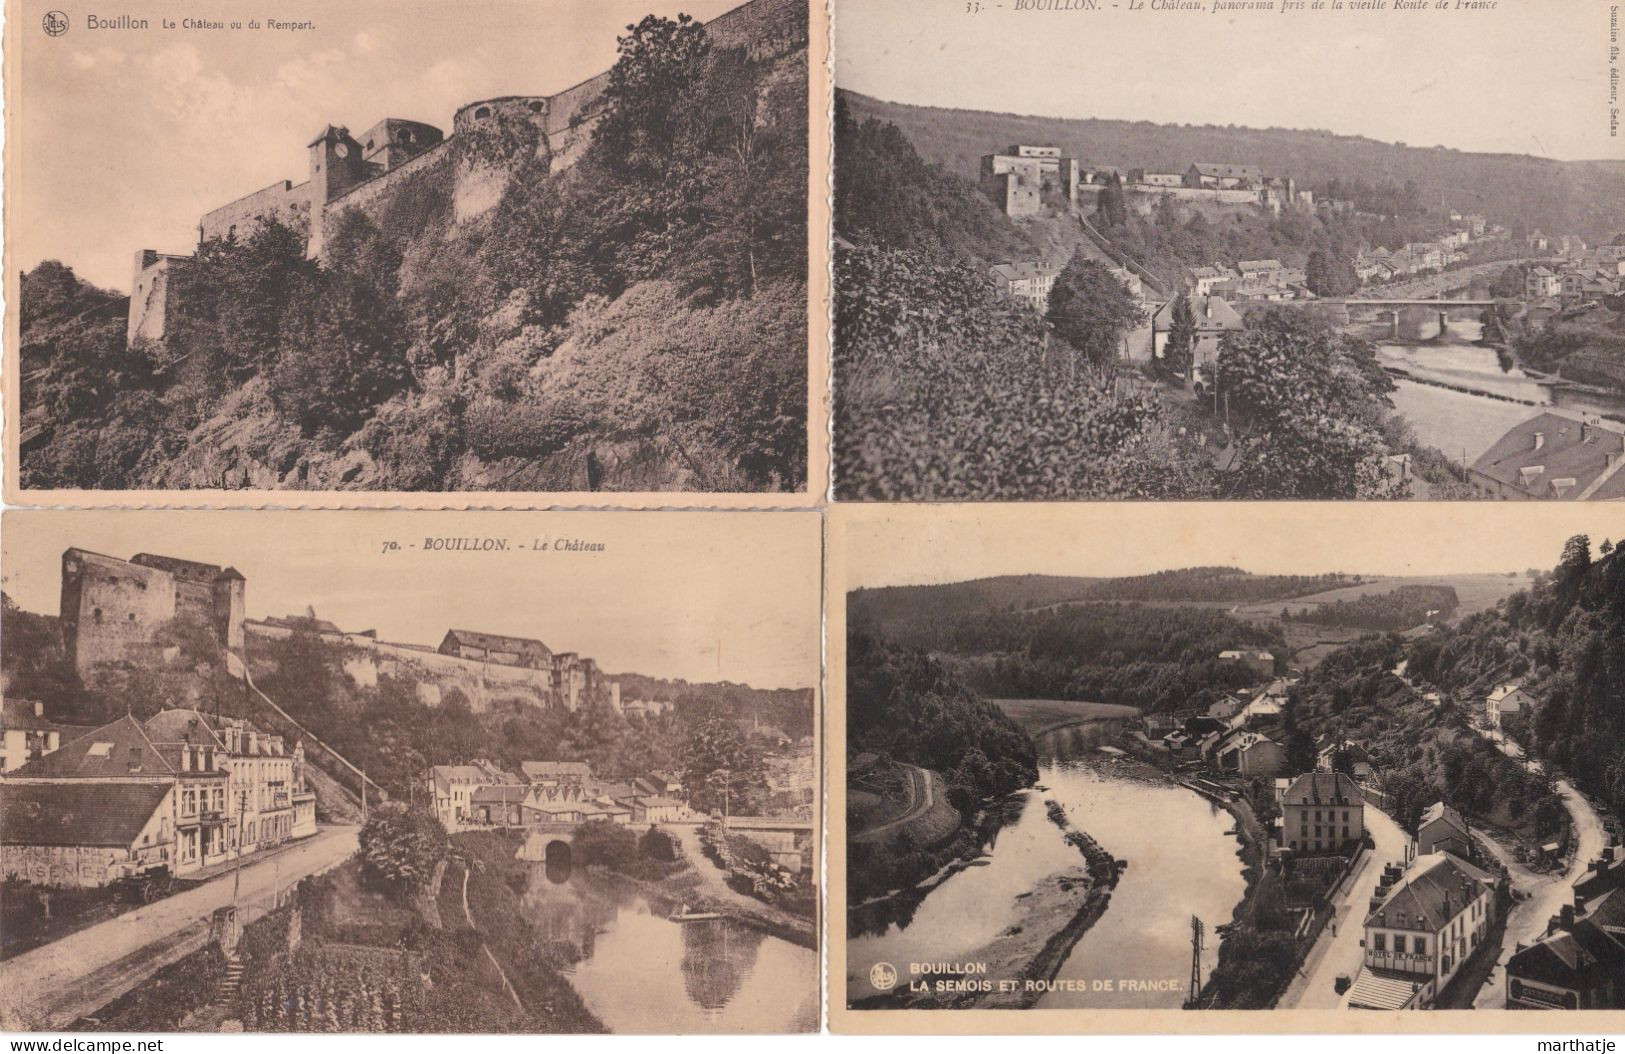 39 cartes postales de Bouillon - province Luxemburg - Belgique